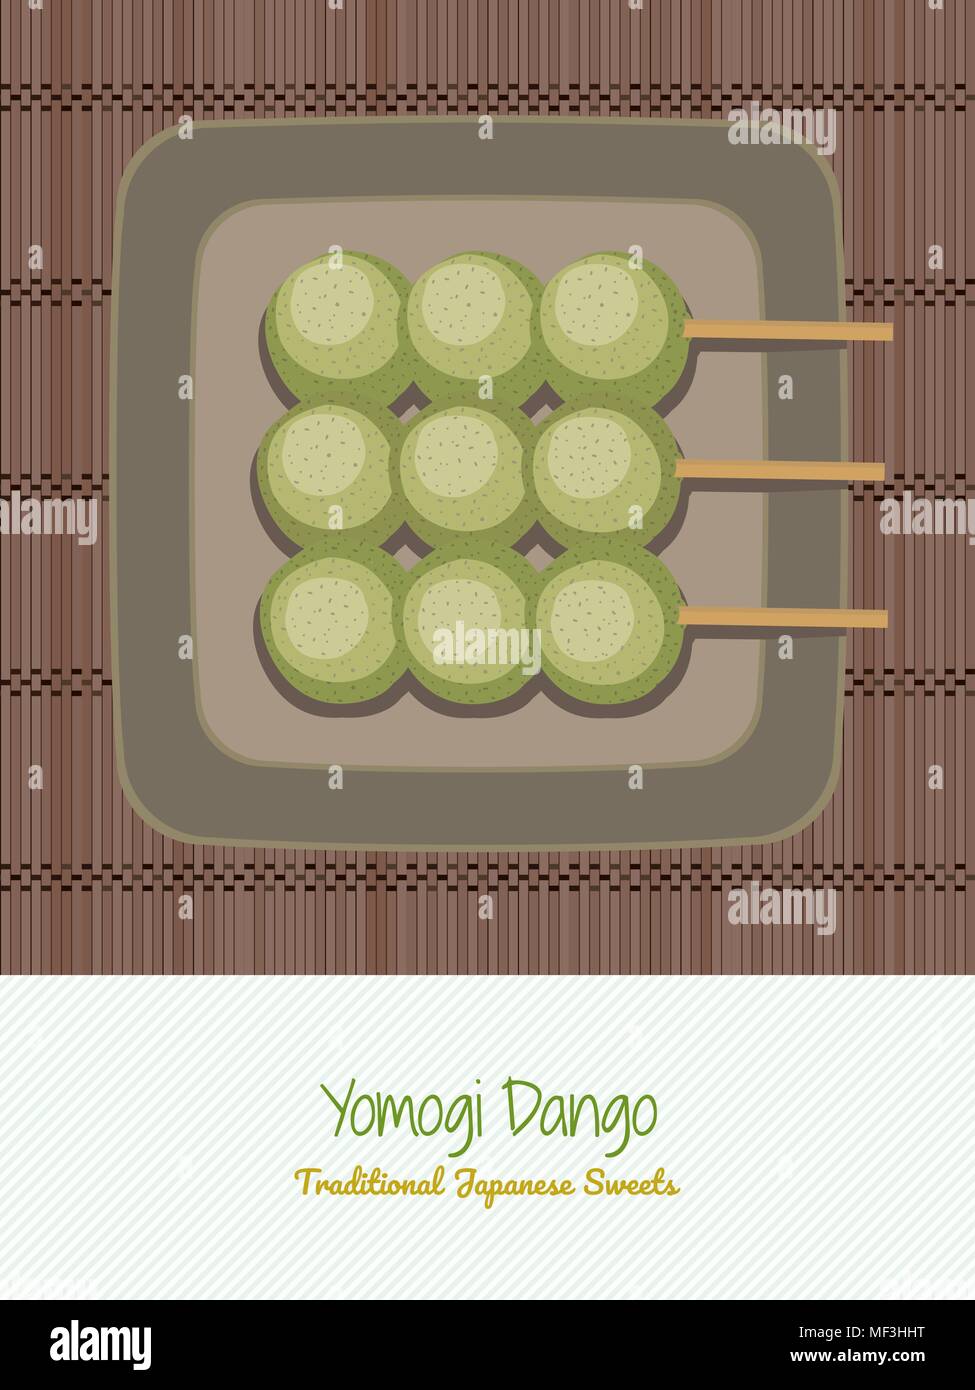 Traditionelle japanische Süßigkeiten auf der Platte. Yomogi Dango. Asiatische Küche. Feder Snack. Grün gefärbt durch die japanischen Beifuß (yomogi). Stock Vektor